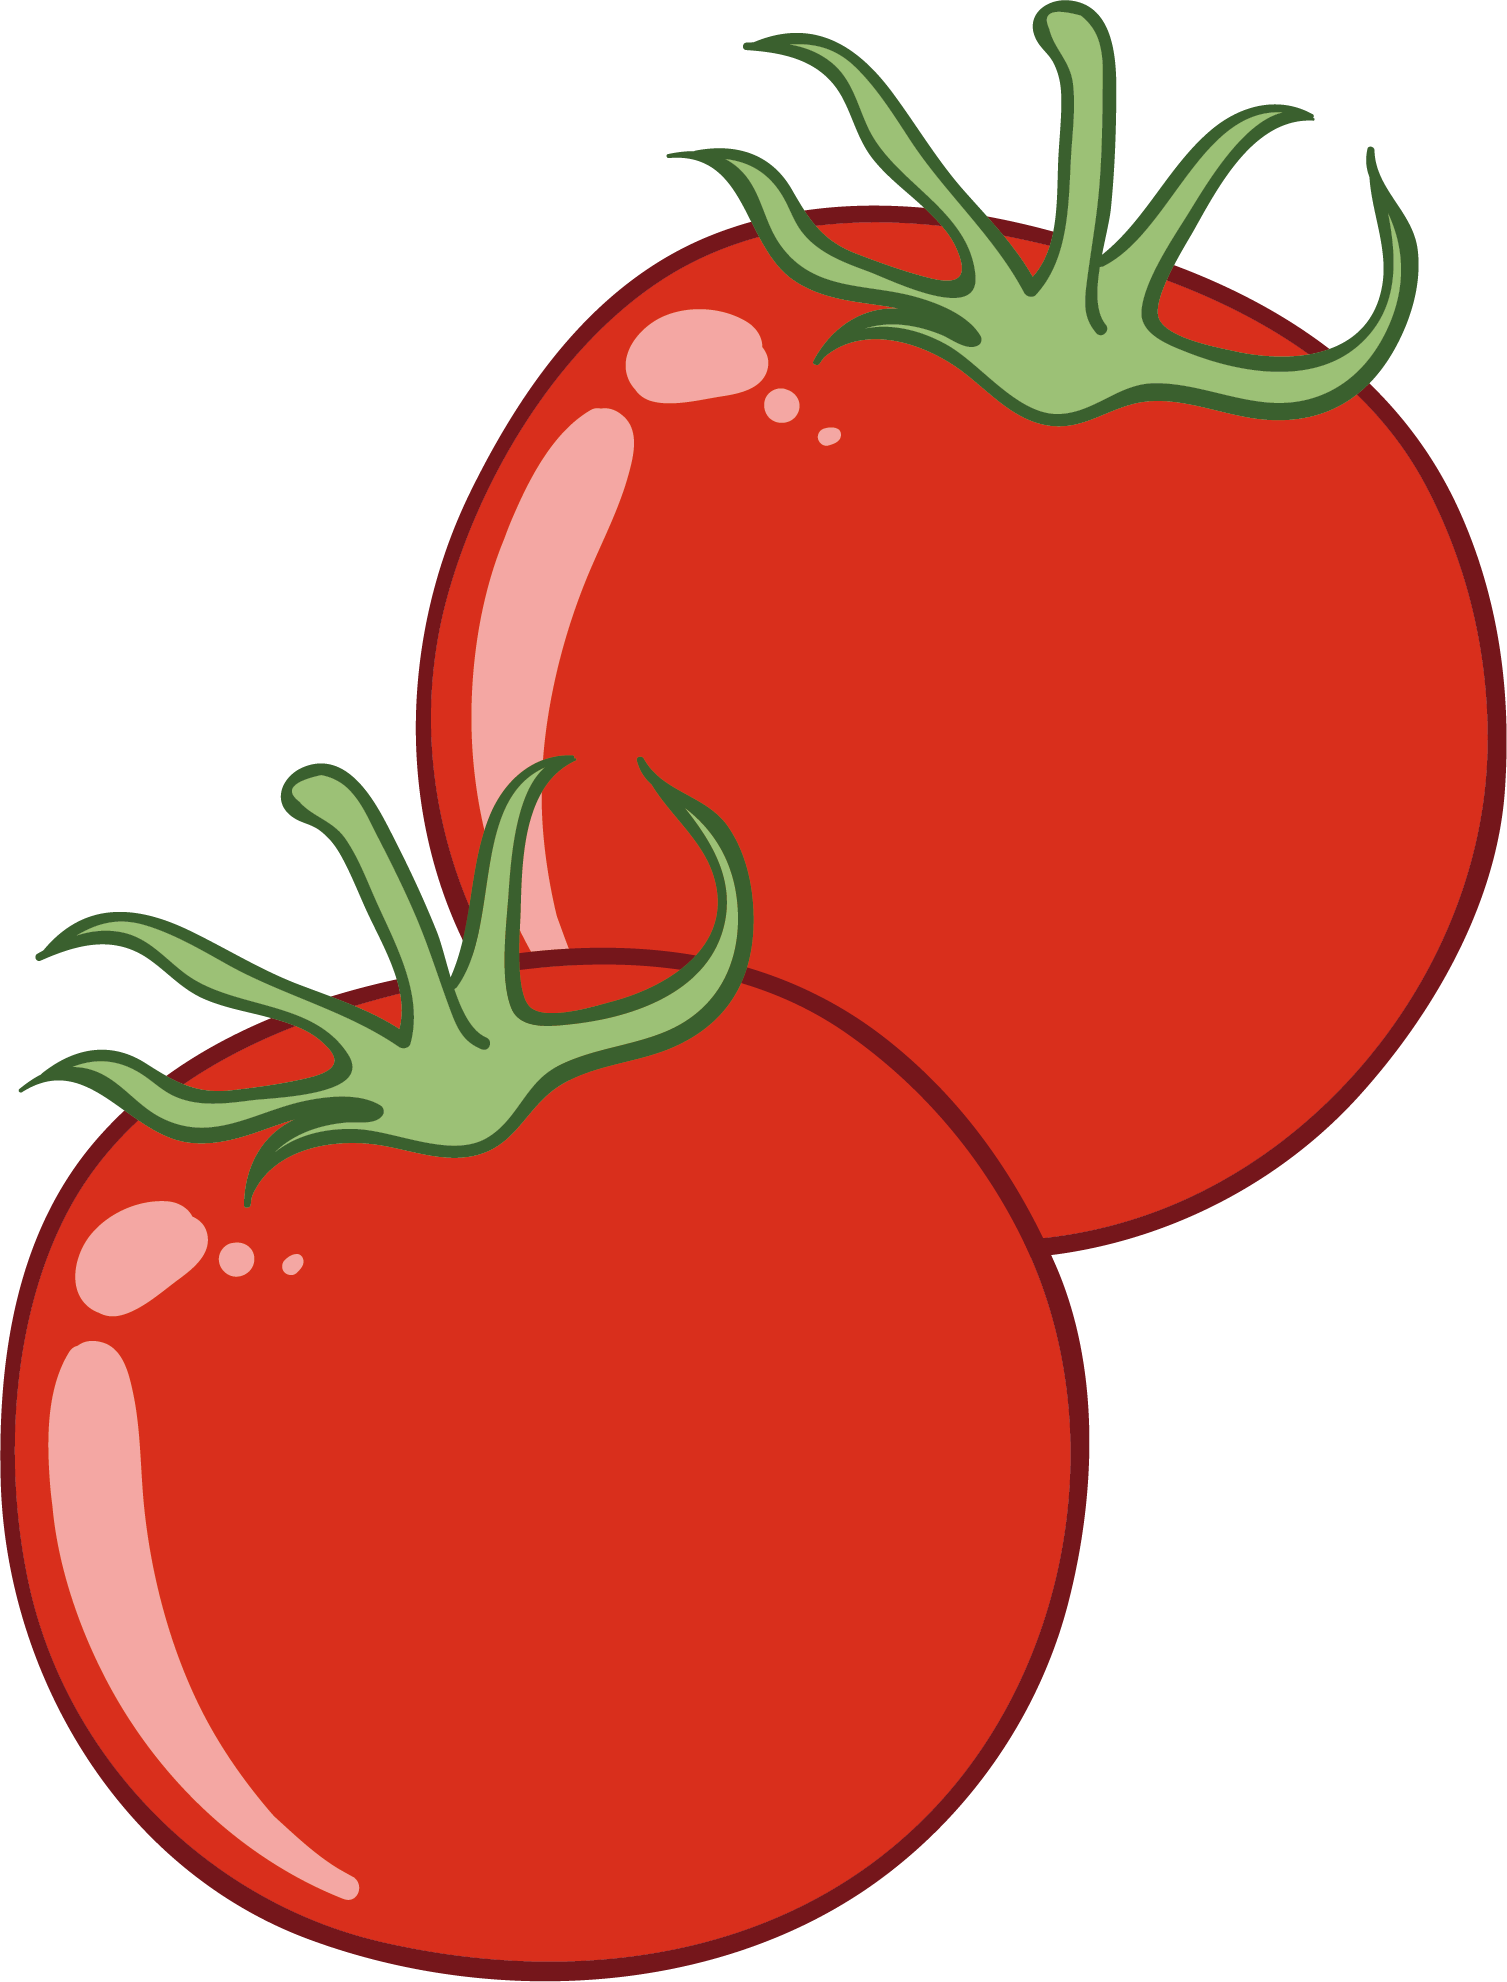 手绘卡通西红柿食材矢量图设计素材免费下载